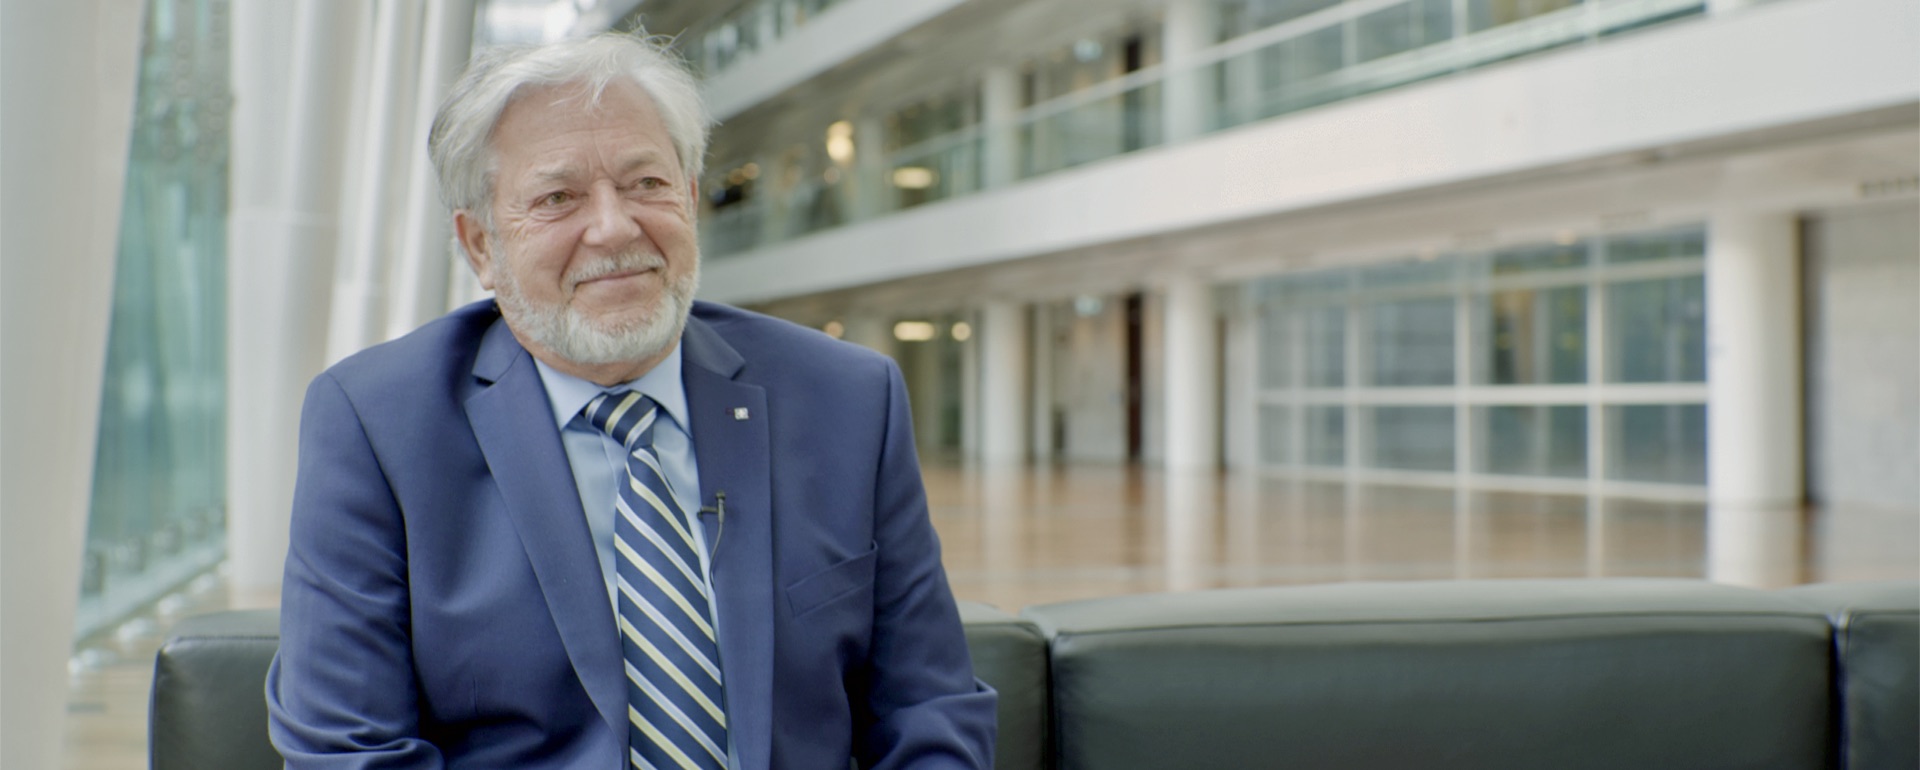 Un documentaire sur Me Jean-Claude Scraire, ancien président de la Caisse de dépôt et Placement du Québec sera lancé en septembre